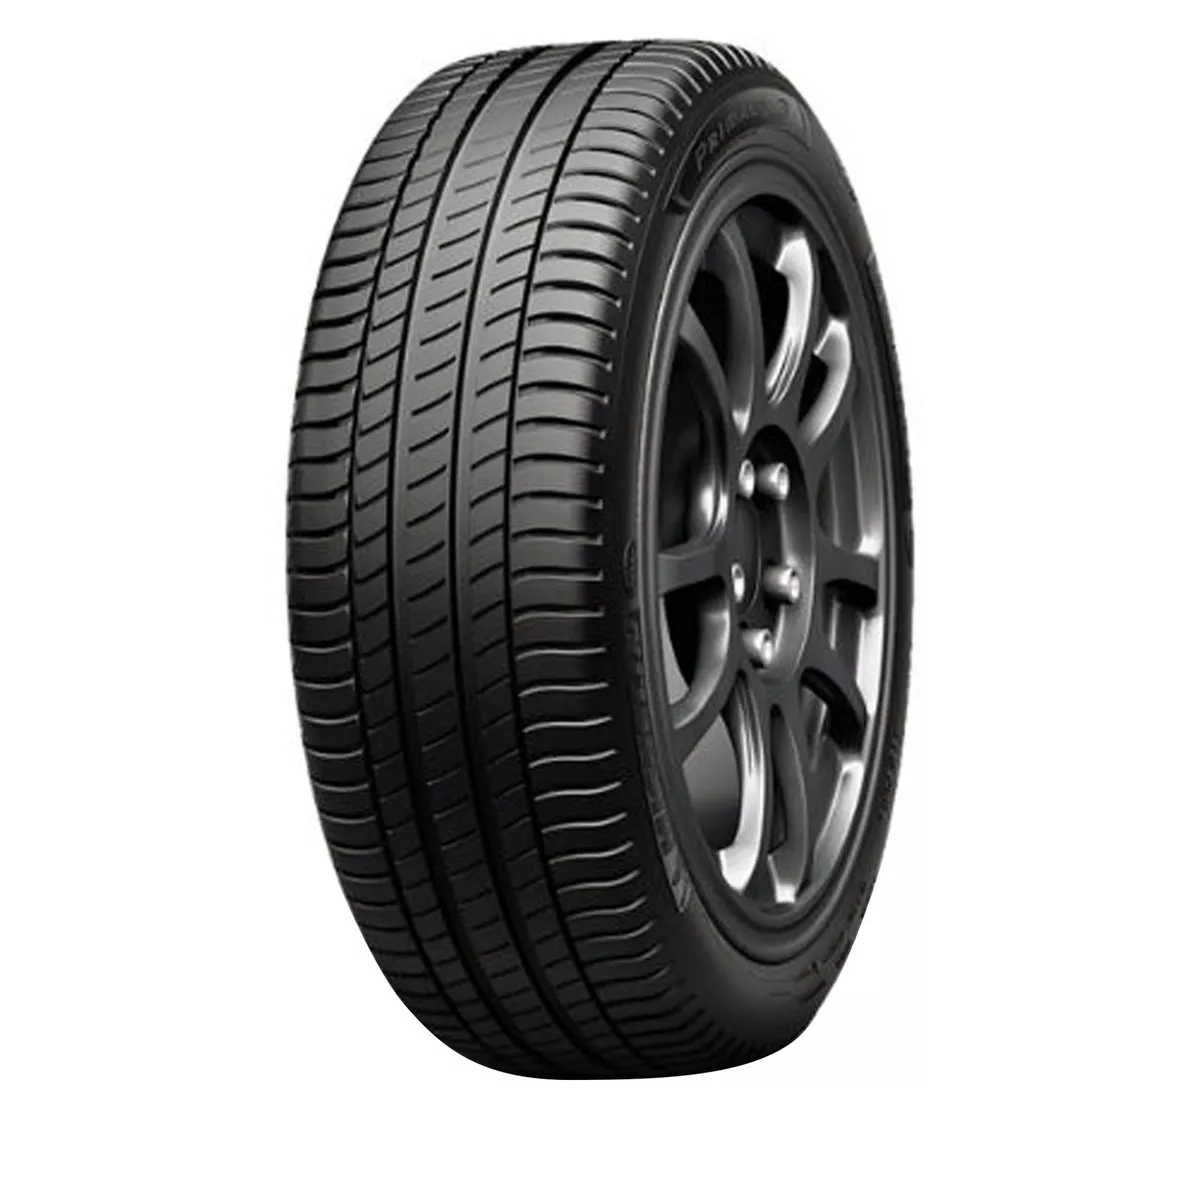 4 New Michelin Primacy 3 - 225/55r17 Tires 2255517 225 55 17 | eBay